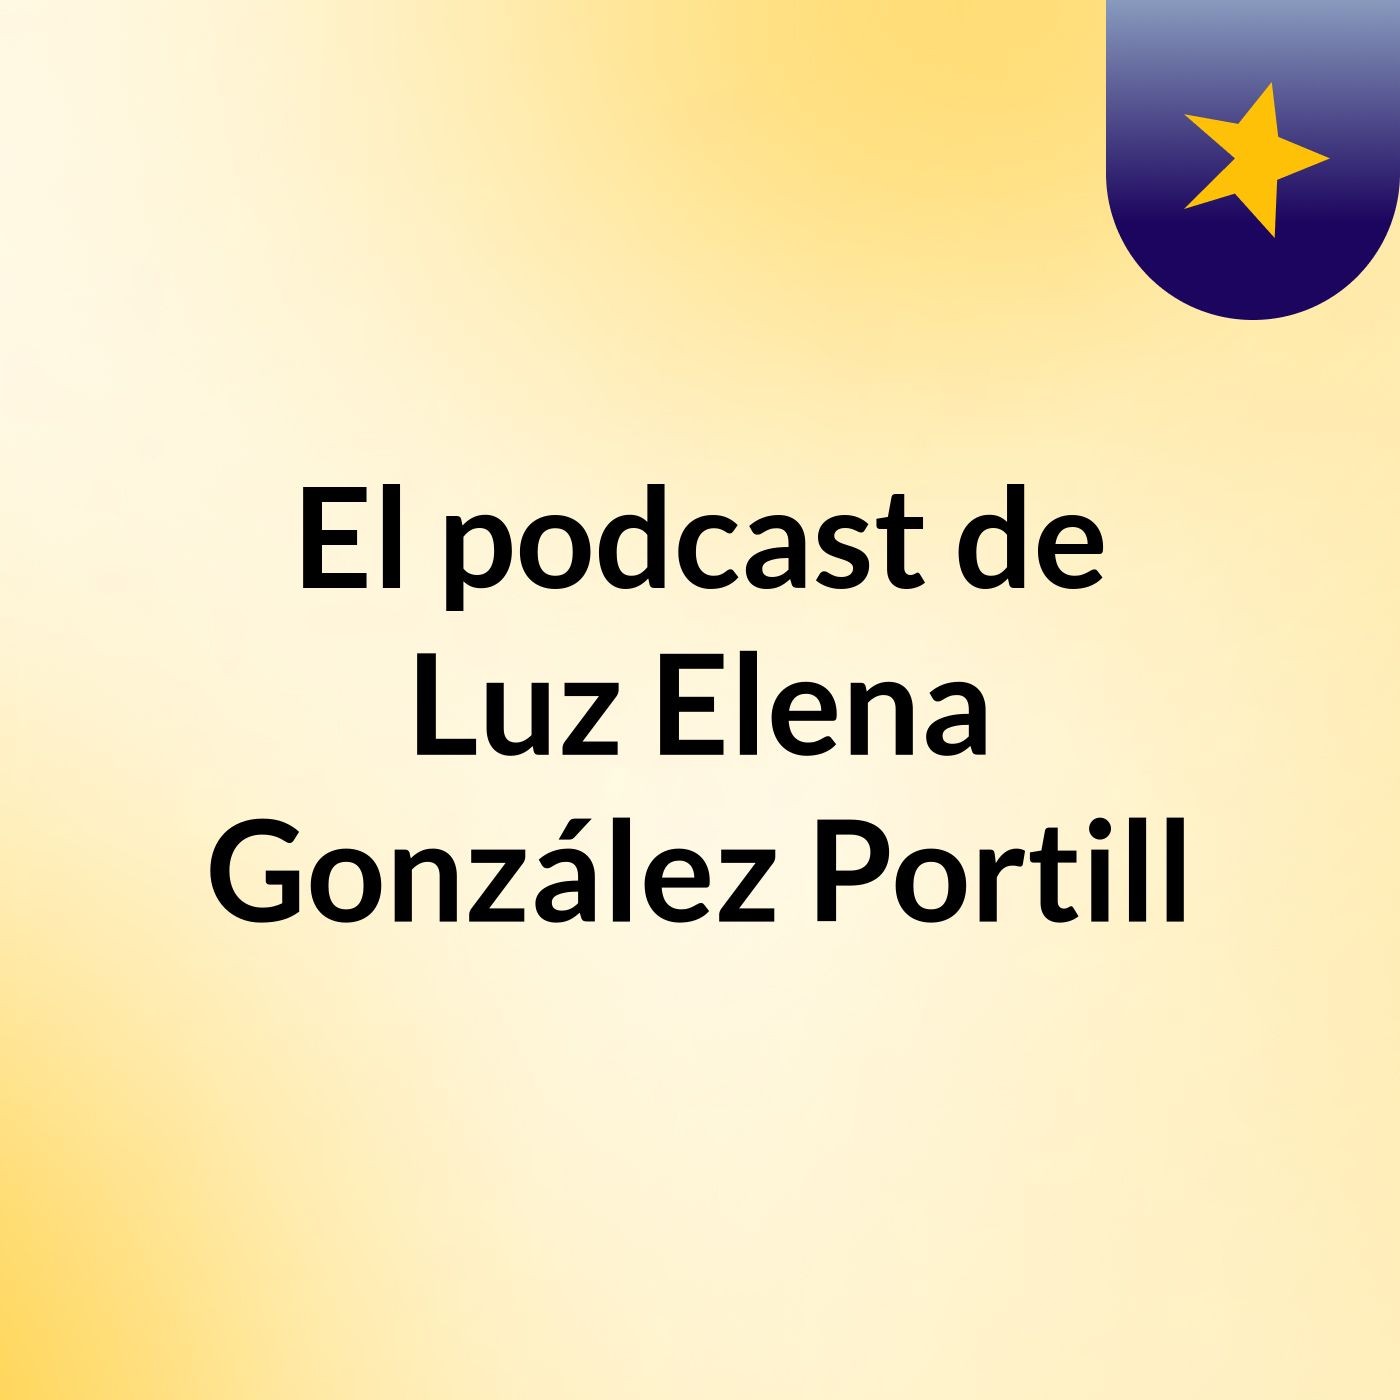 El podcast de Luz Elena González Portill